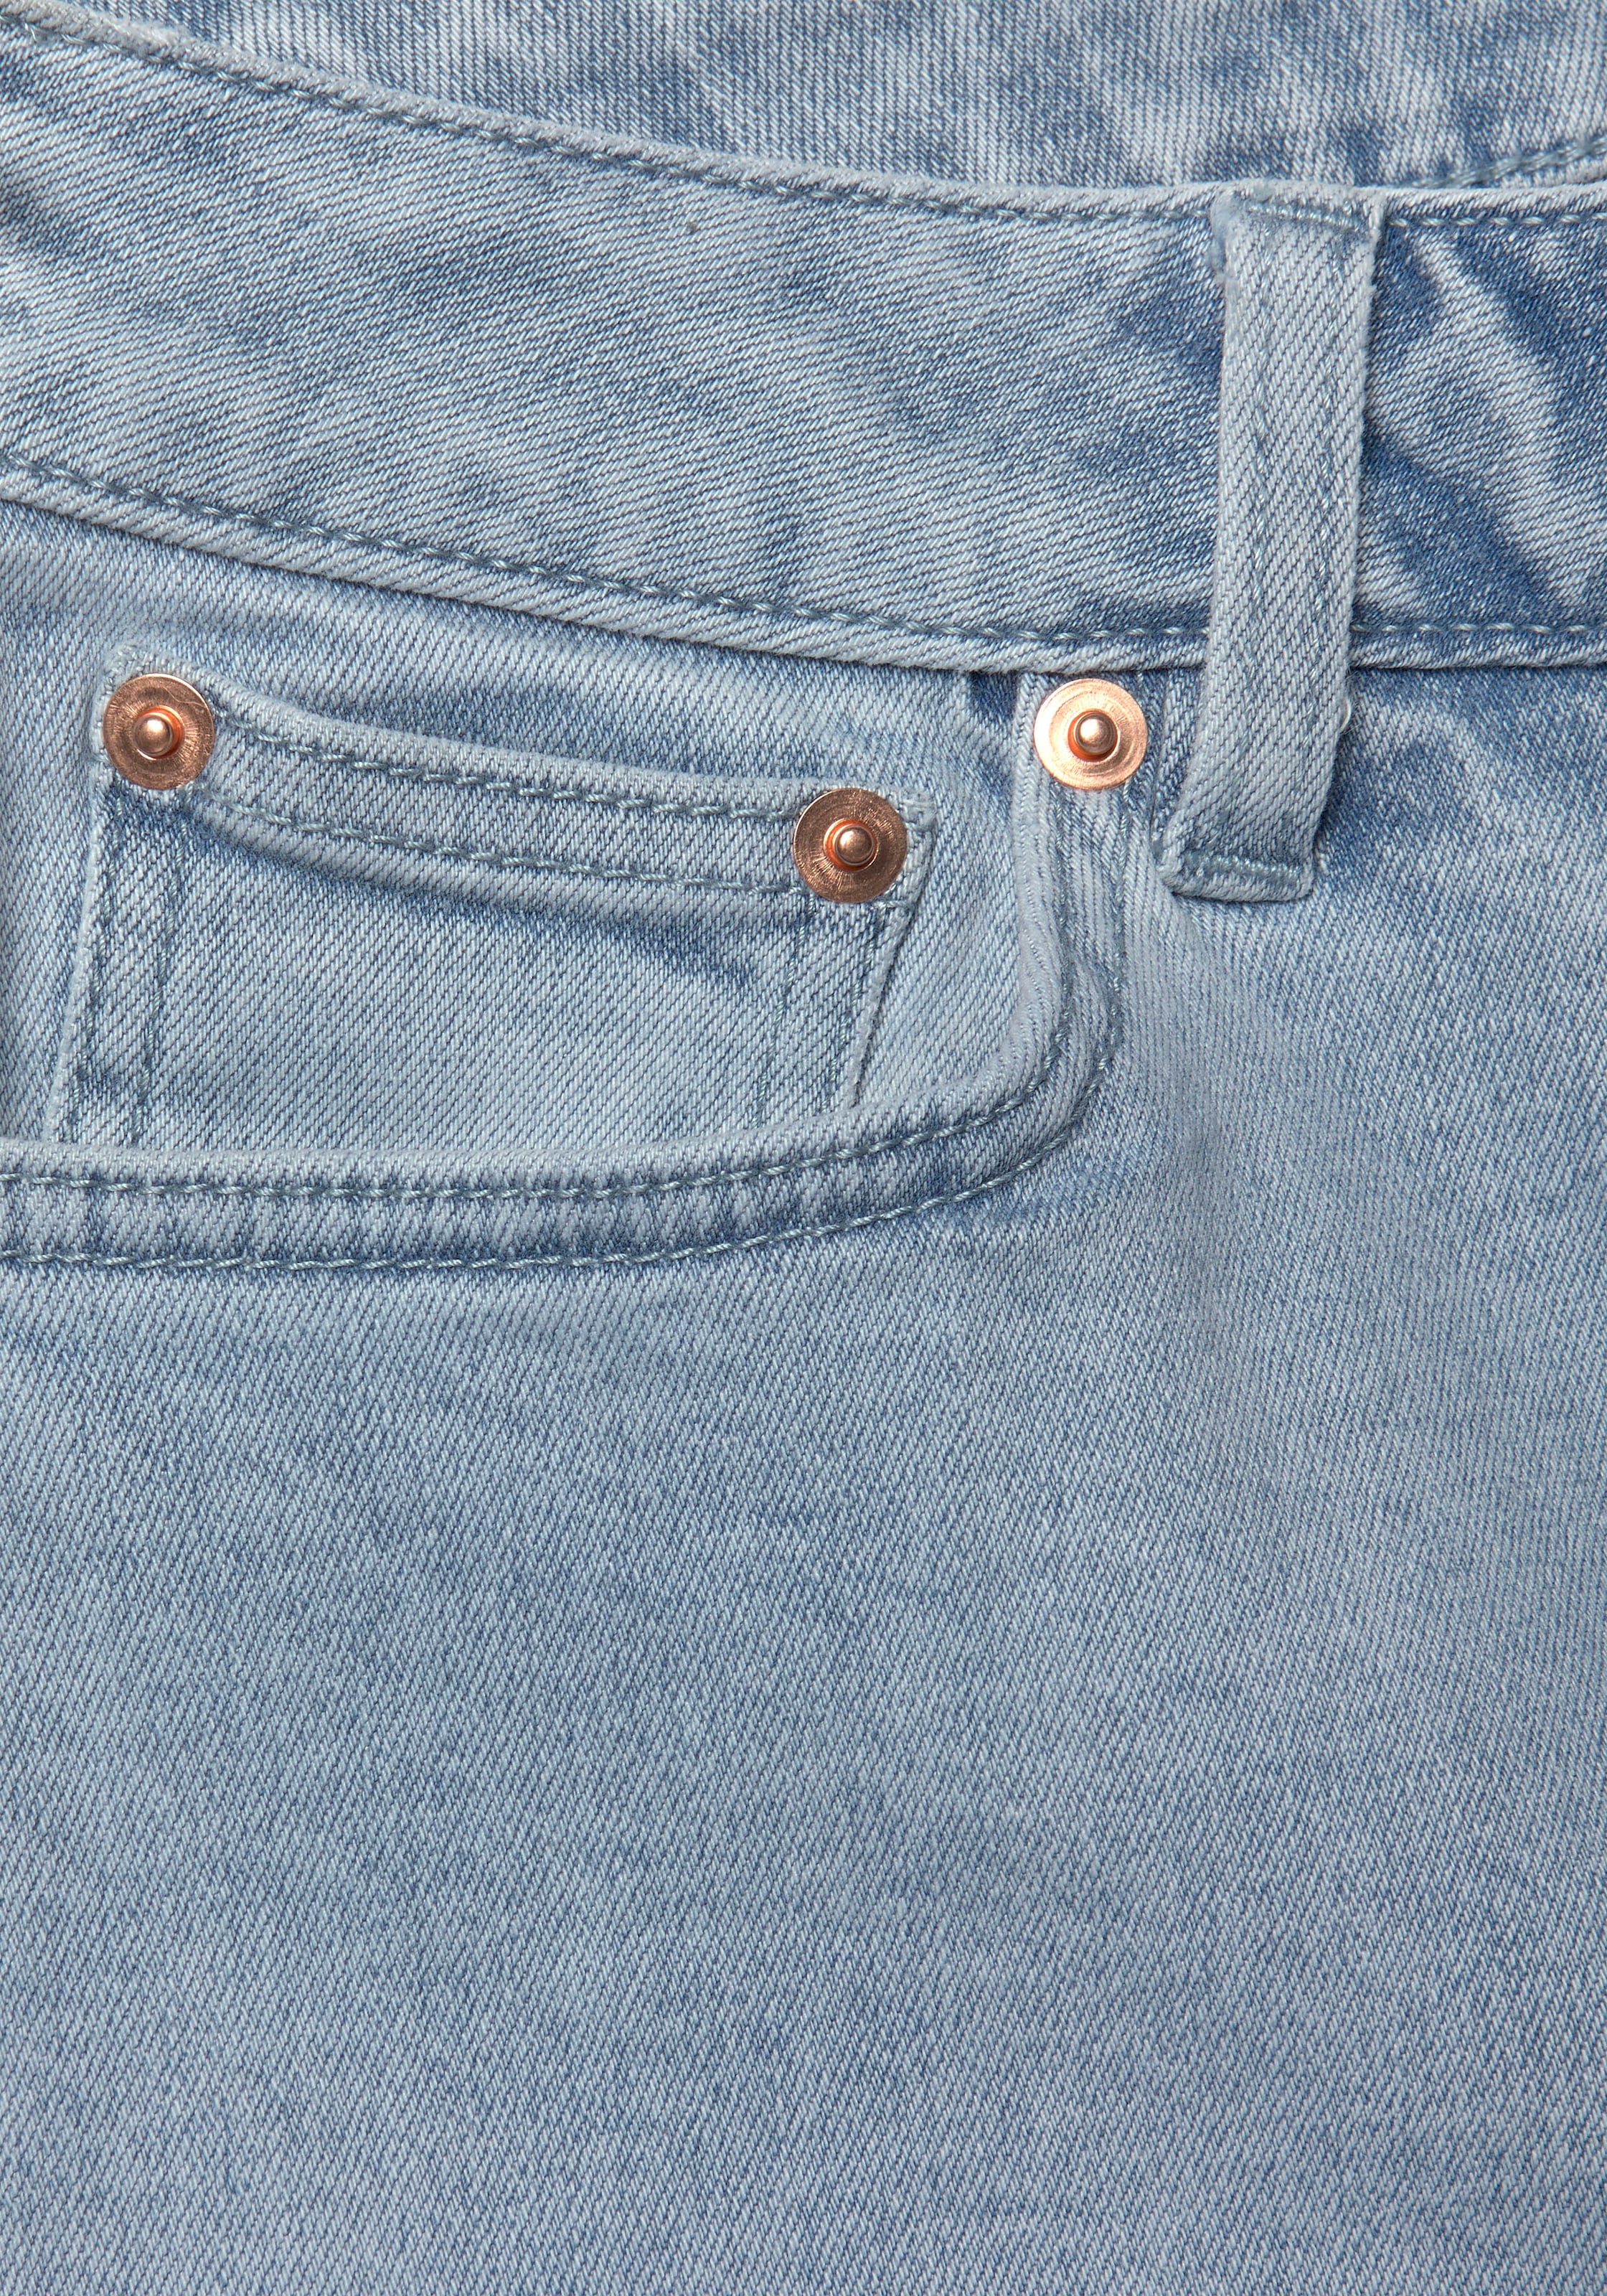 Buffalo Weite Jeans, mit leicht ausgefranstem Beinabschluss, Culotte Jeans in 7/8-Länge